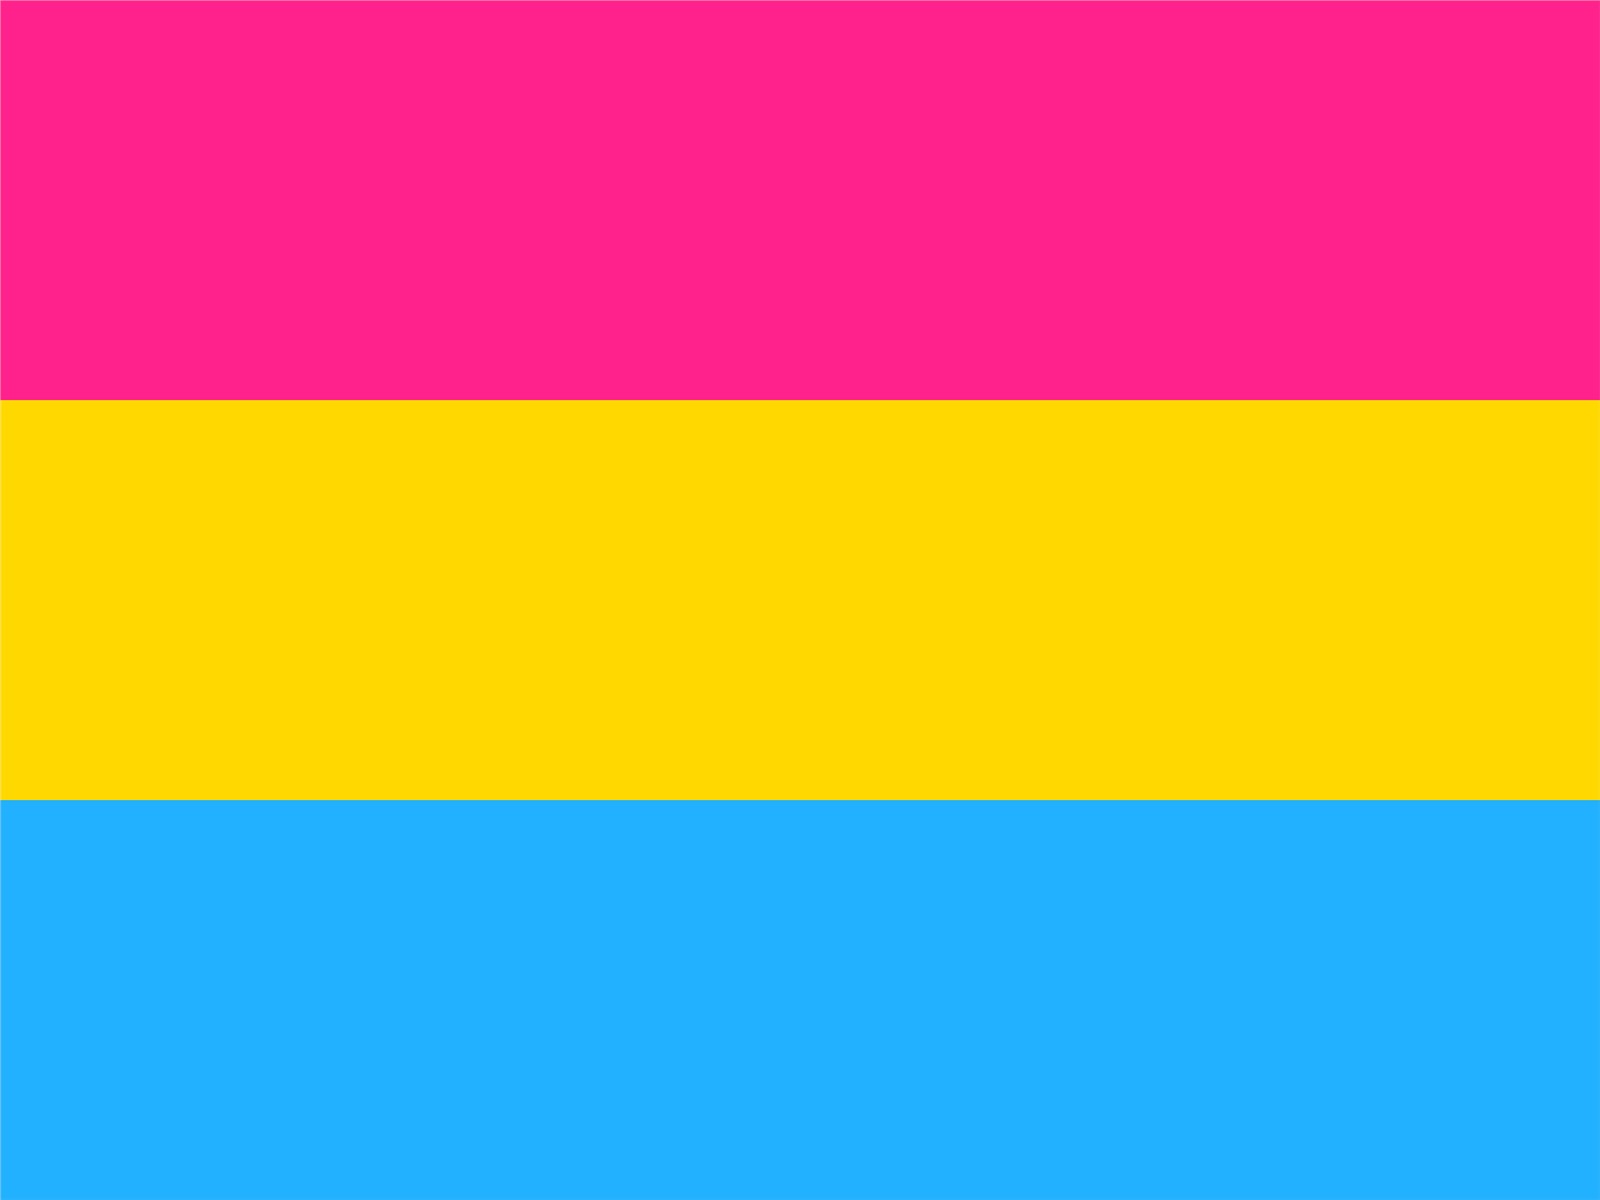 Transgender gay pride flag